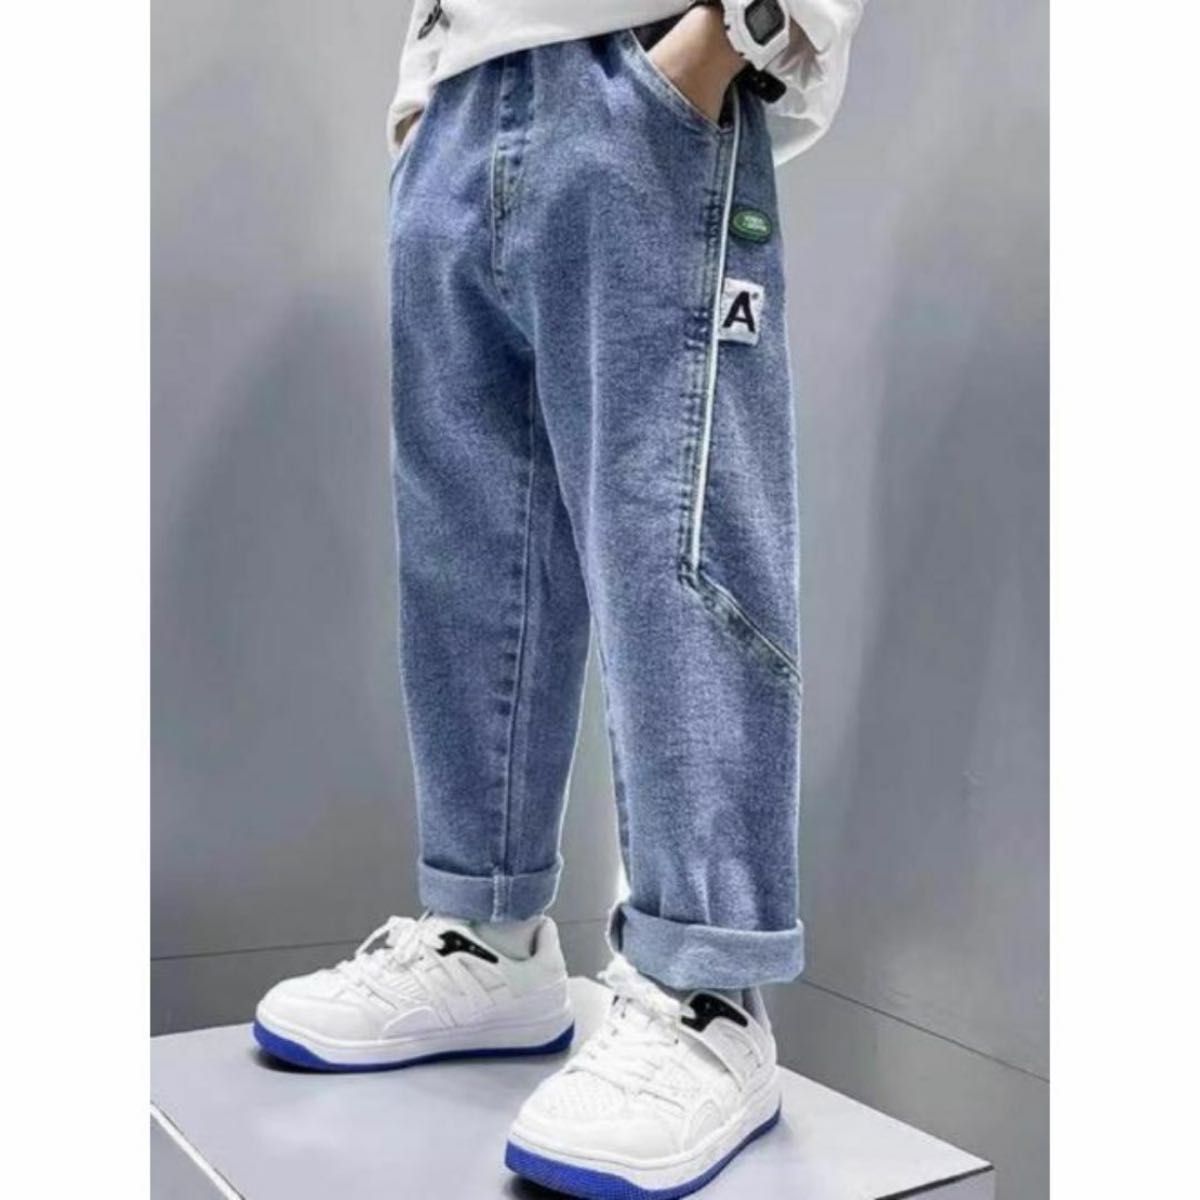 キッズジーンズパンツ130サイズボトムスブルーこども子供男の子男児女児韓国子供服 ジーンズ ボトムス ズボン デニム パンツ